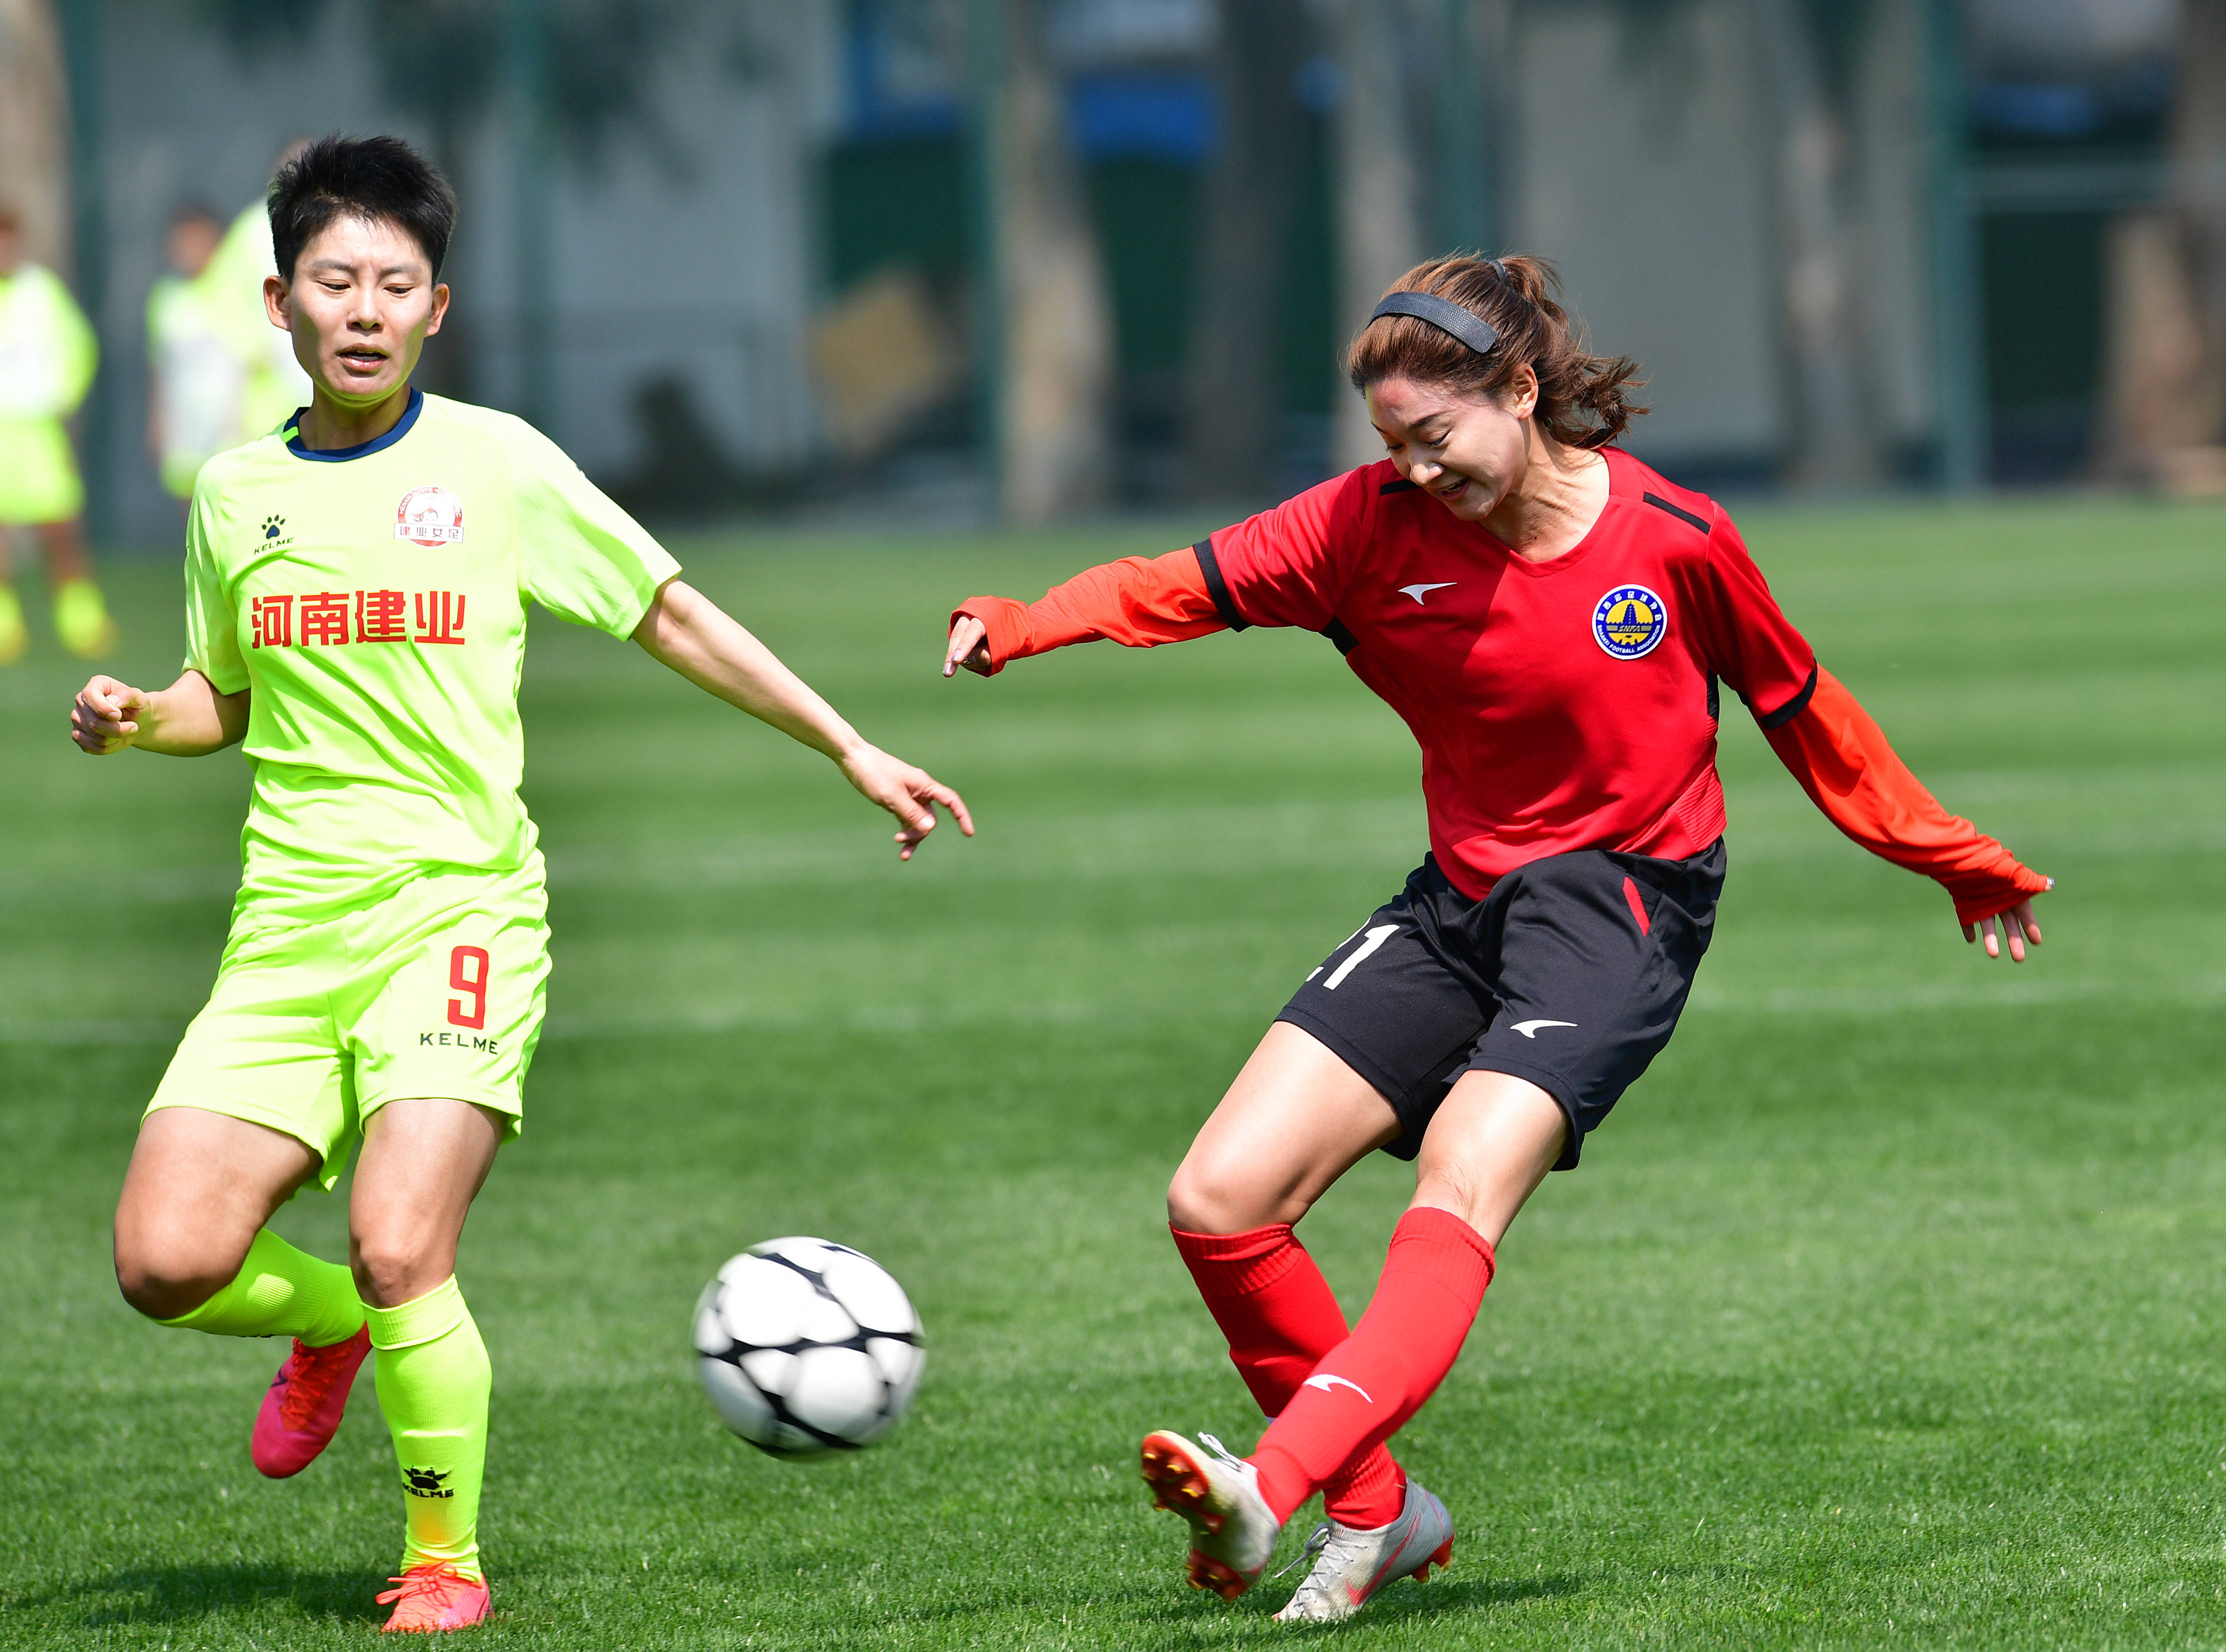 3月25日,陕西女足队球员杨倩(右)在比赛中传球.